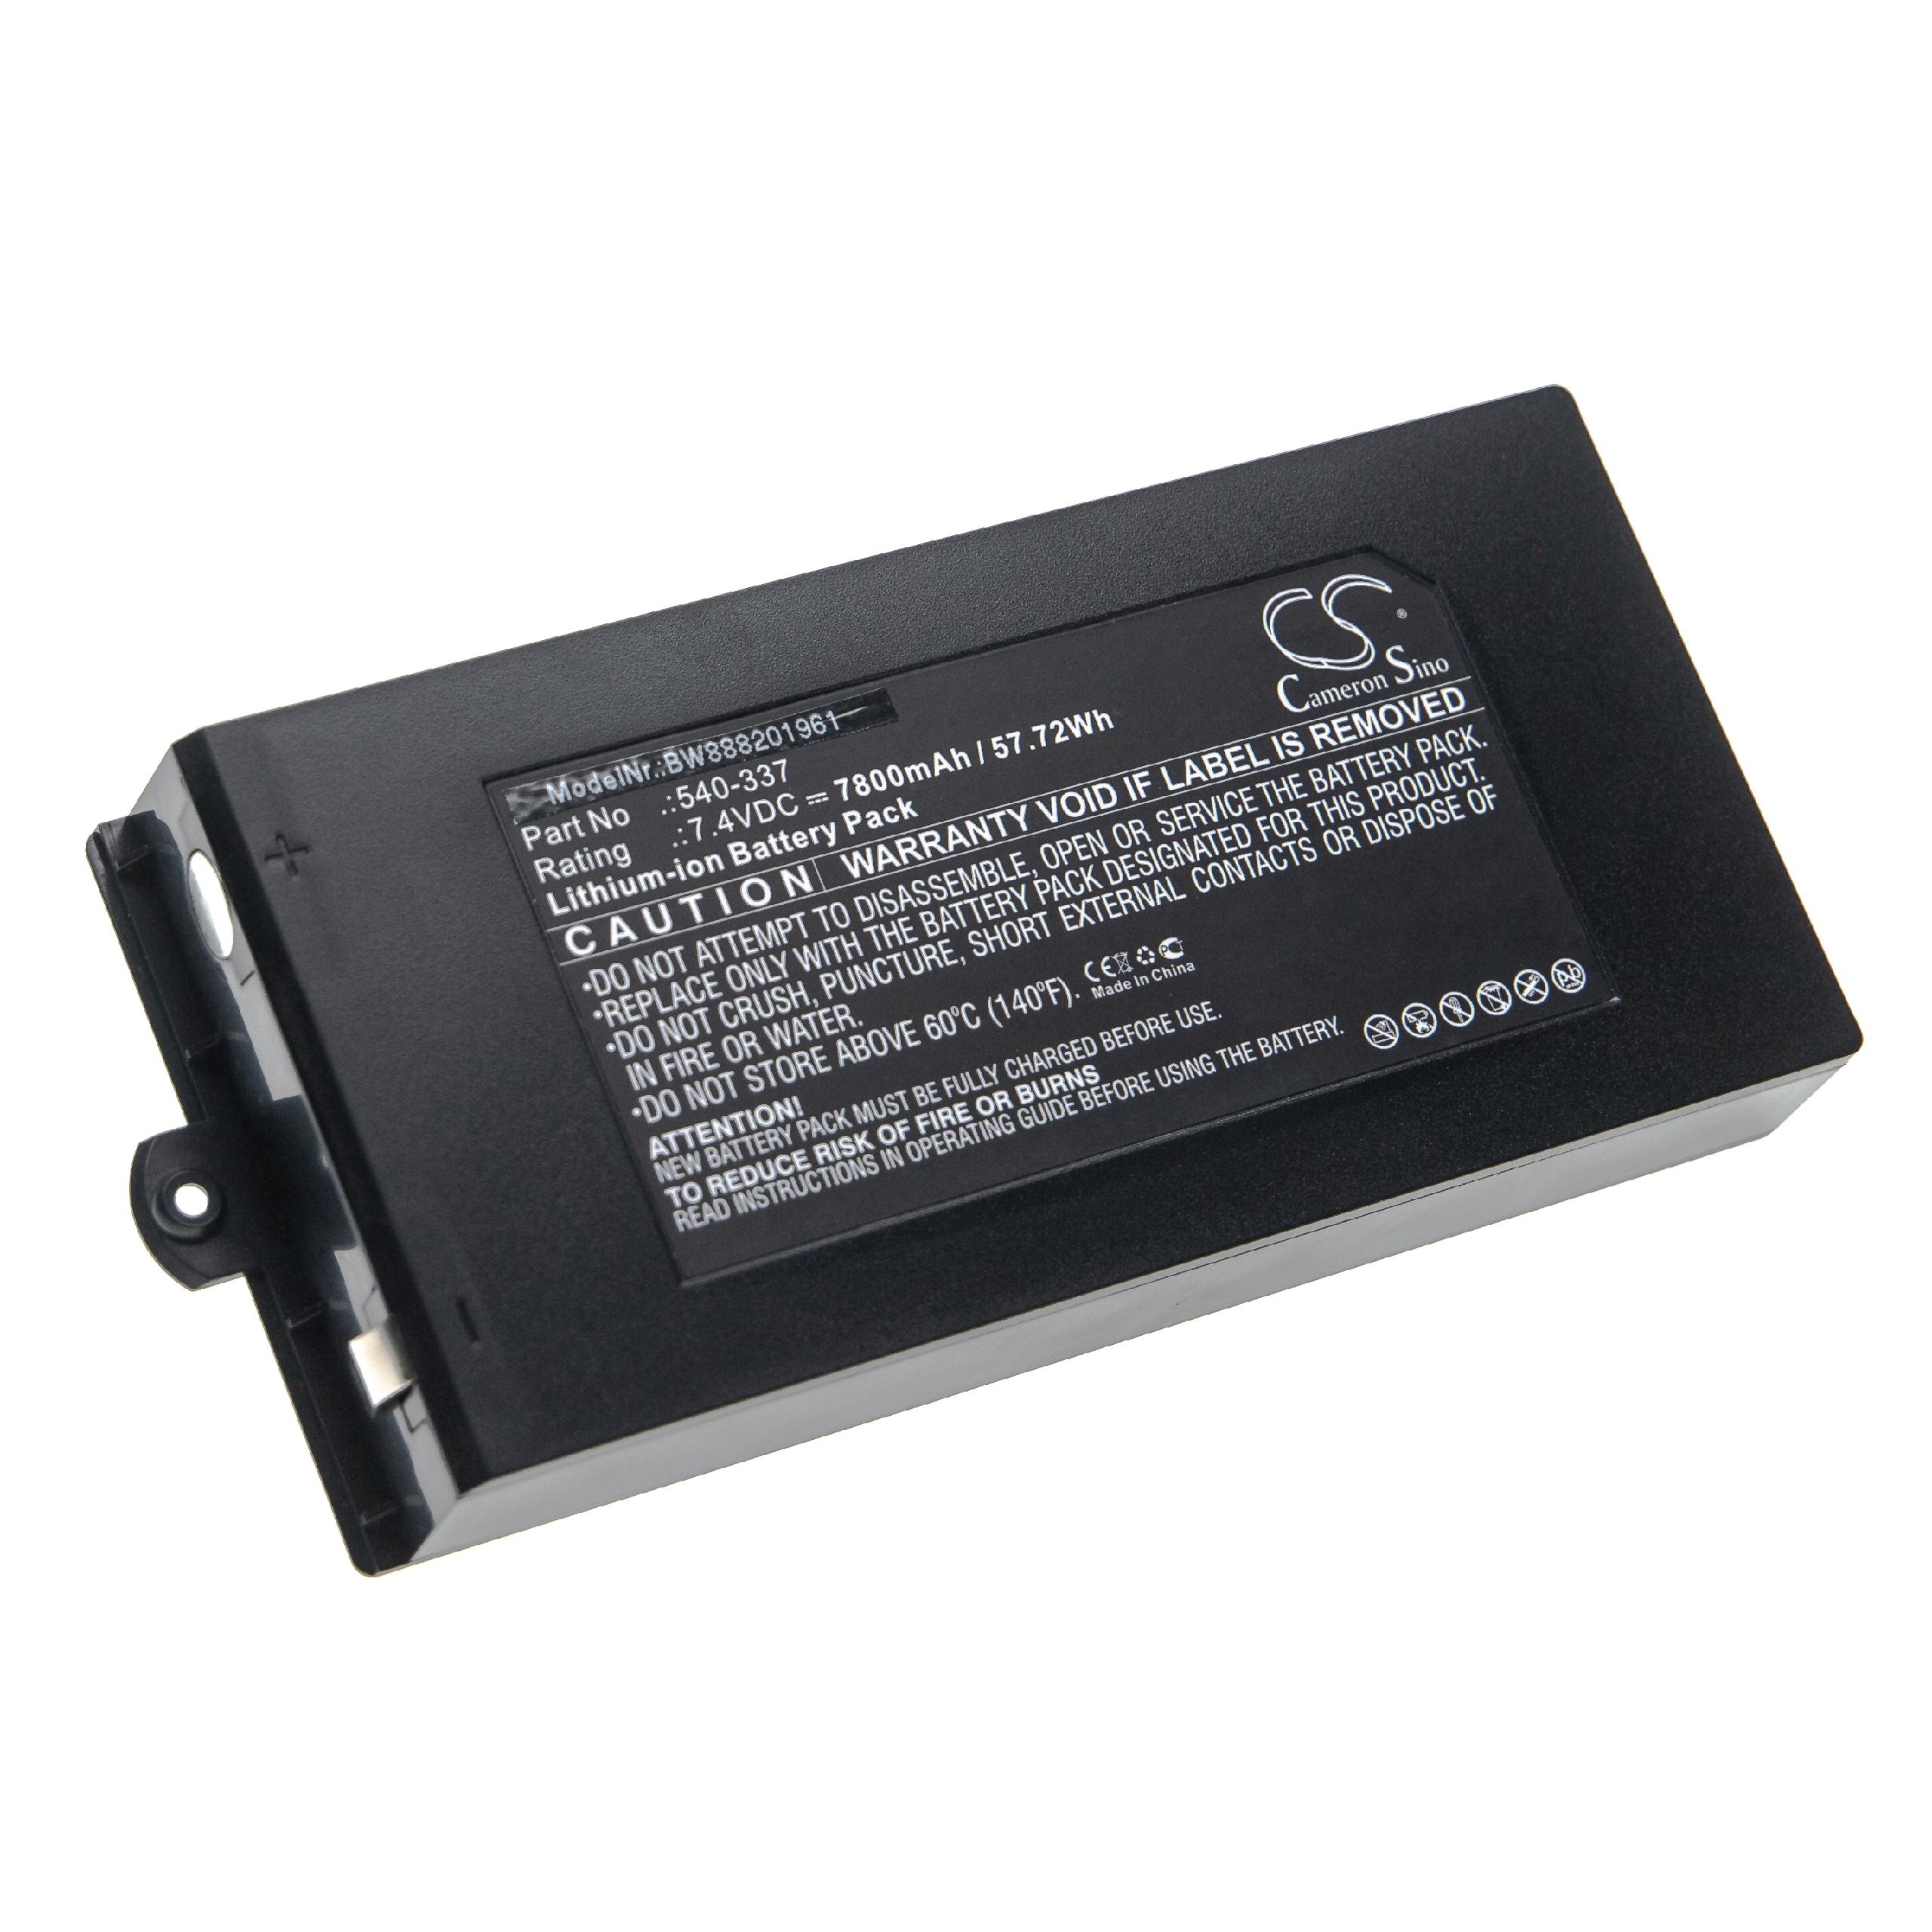 Akumulator do przyrządu pomiarowego zamiennik Owon 540-337 - 7800 mAh 7,4 V Li-Ion